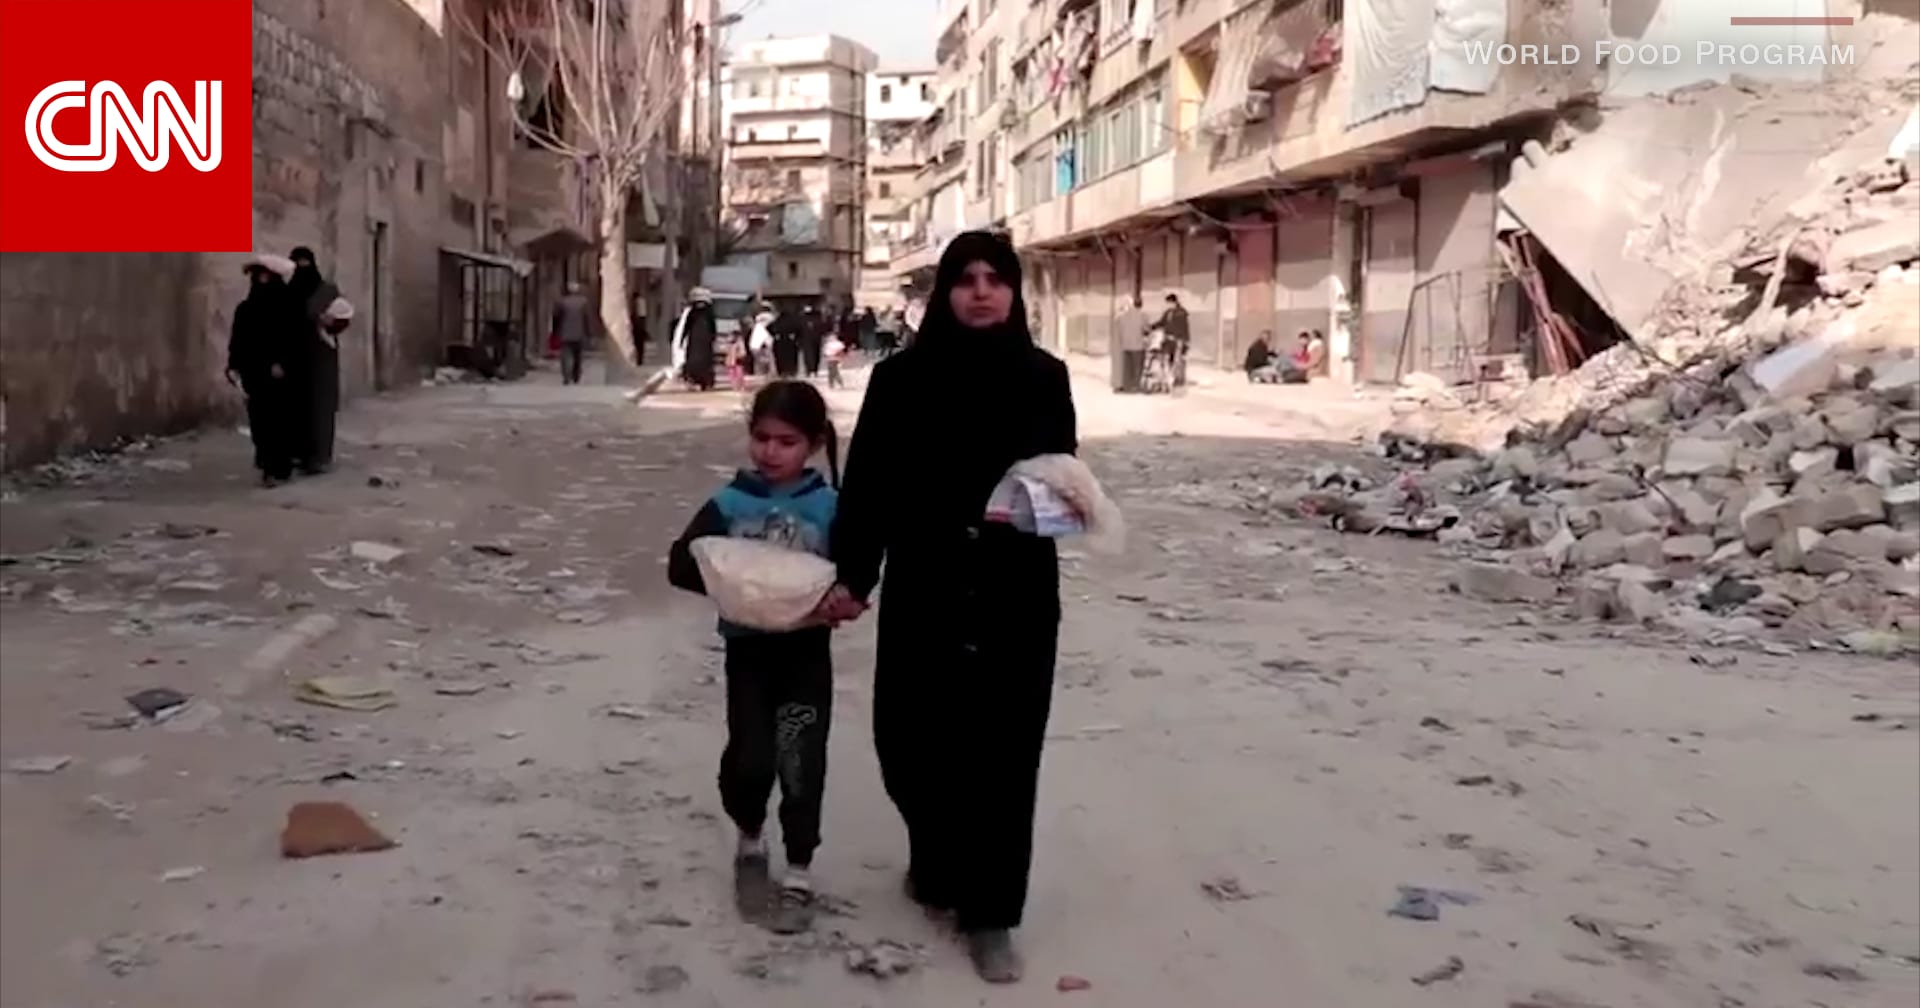 شاهد كيف يساعد برنامج الأغذية العالمي في حد انتشار كورونا في سوريا - CNN Arabic